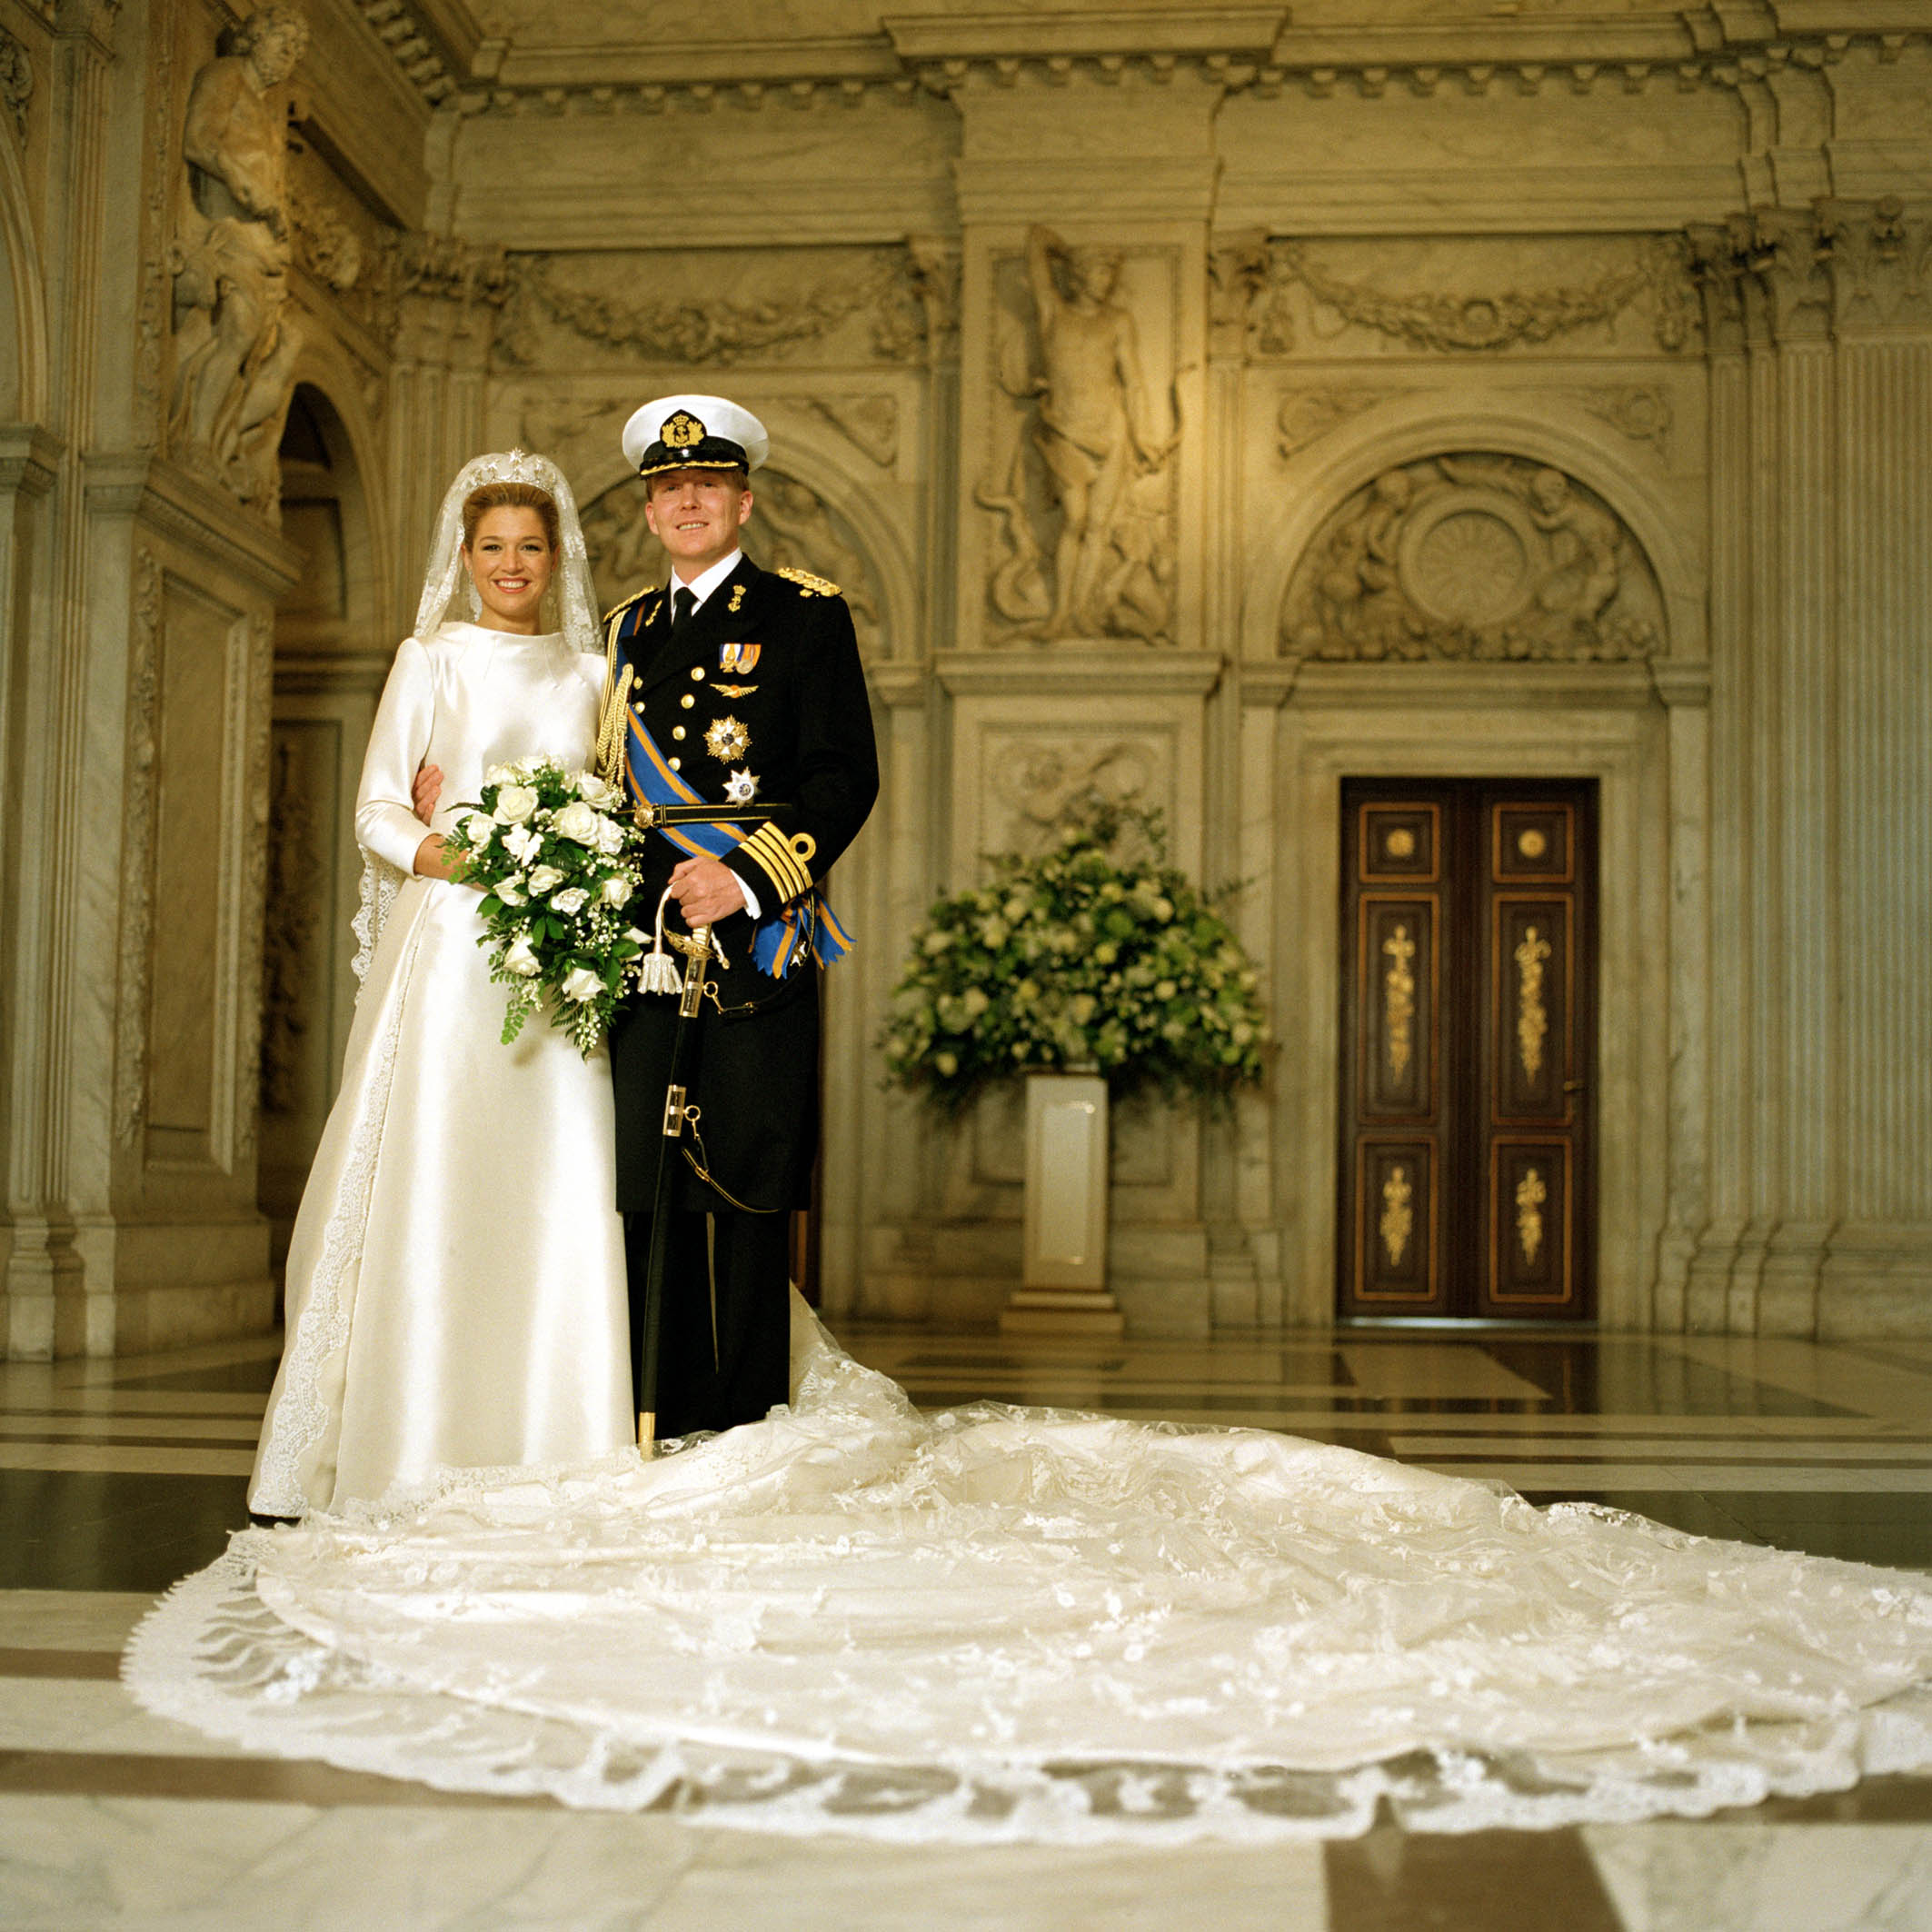 حفل زفاف الملكة ماكسيما وزوجها الملك ويليم ألكساندر- الصورة من موقع ويكيبيديا